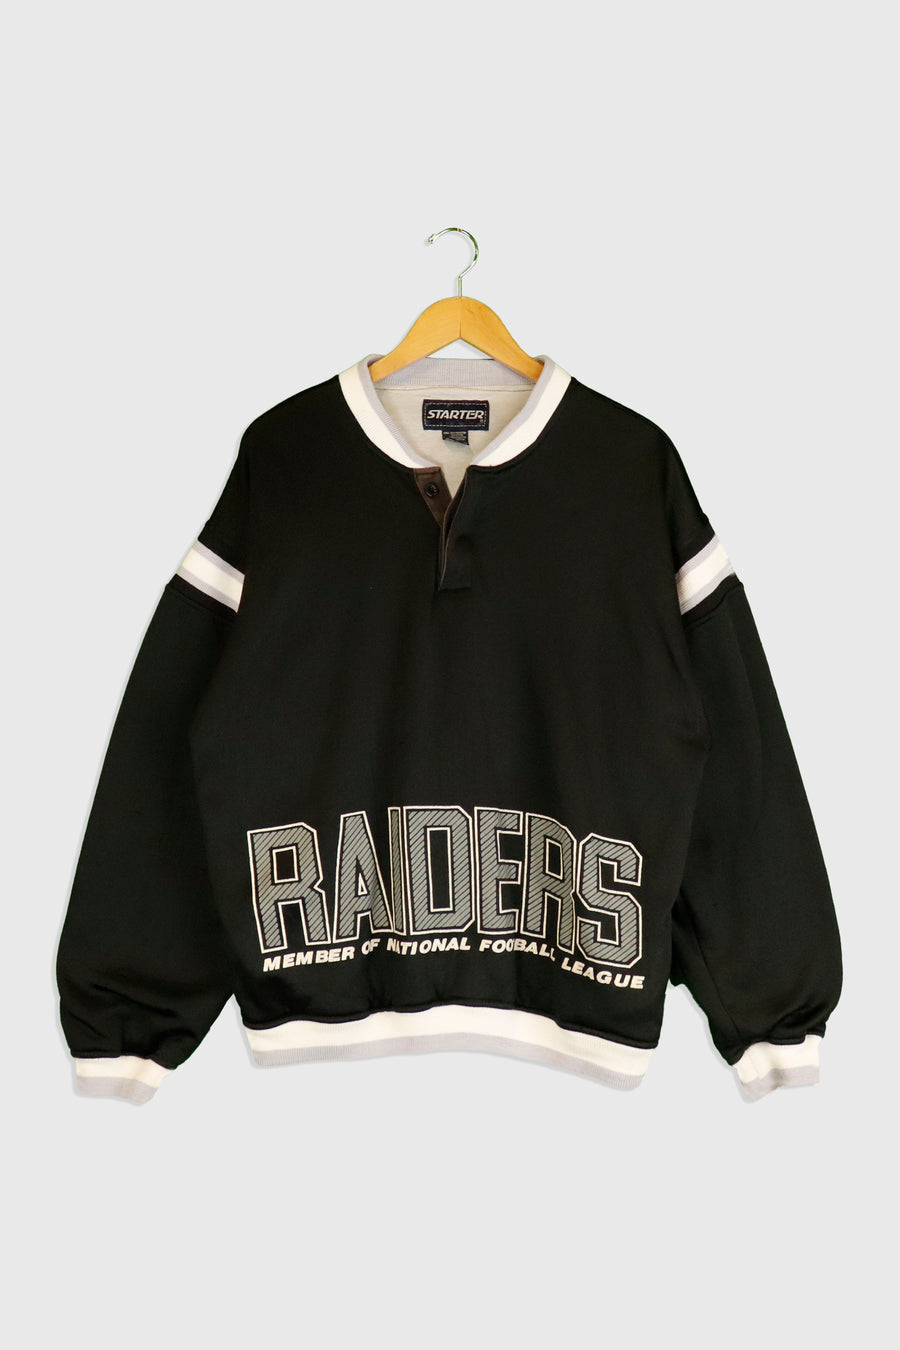 Vintage Starter International Football Leauge Raiders Pullover Jacket Sz L